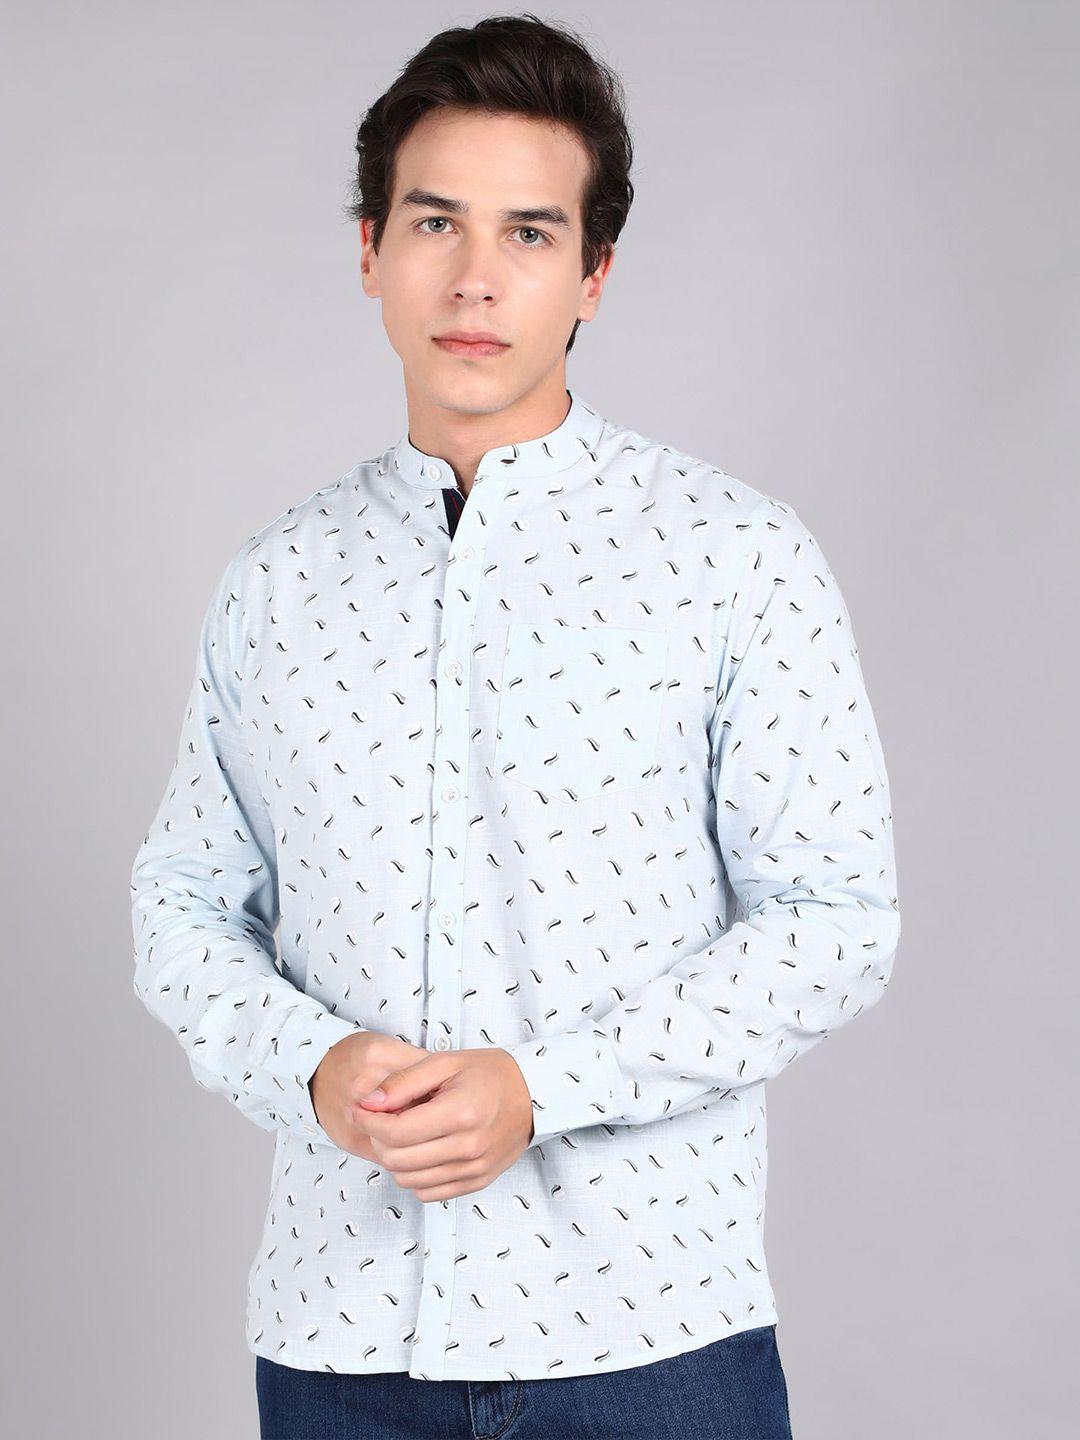 urbano fashion slim fit printed pure cotton casual shirt